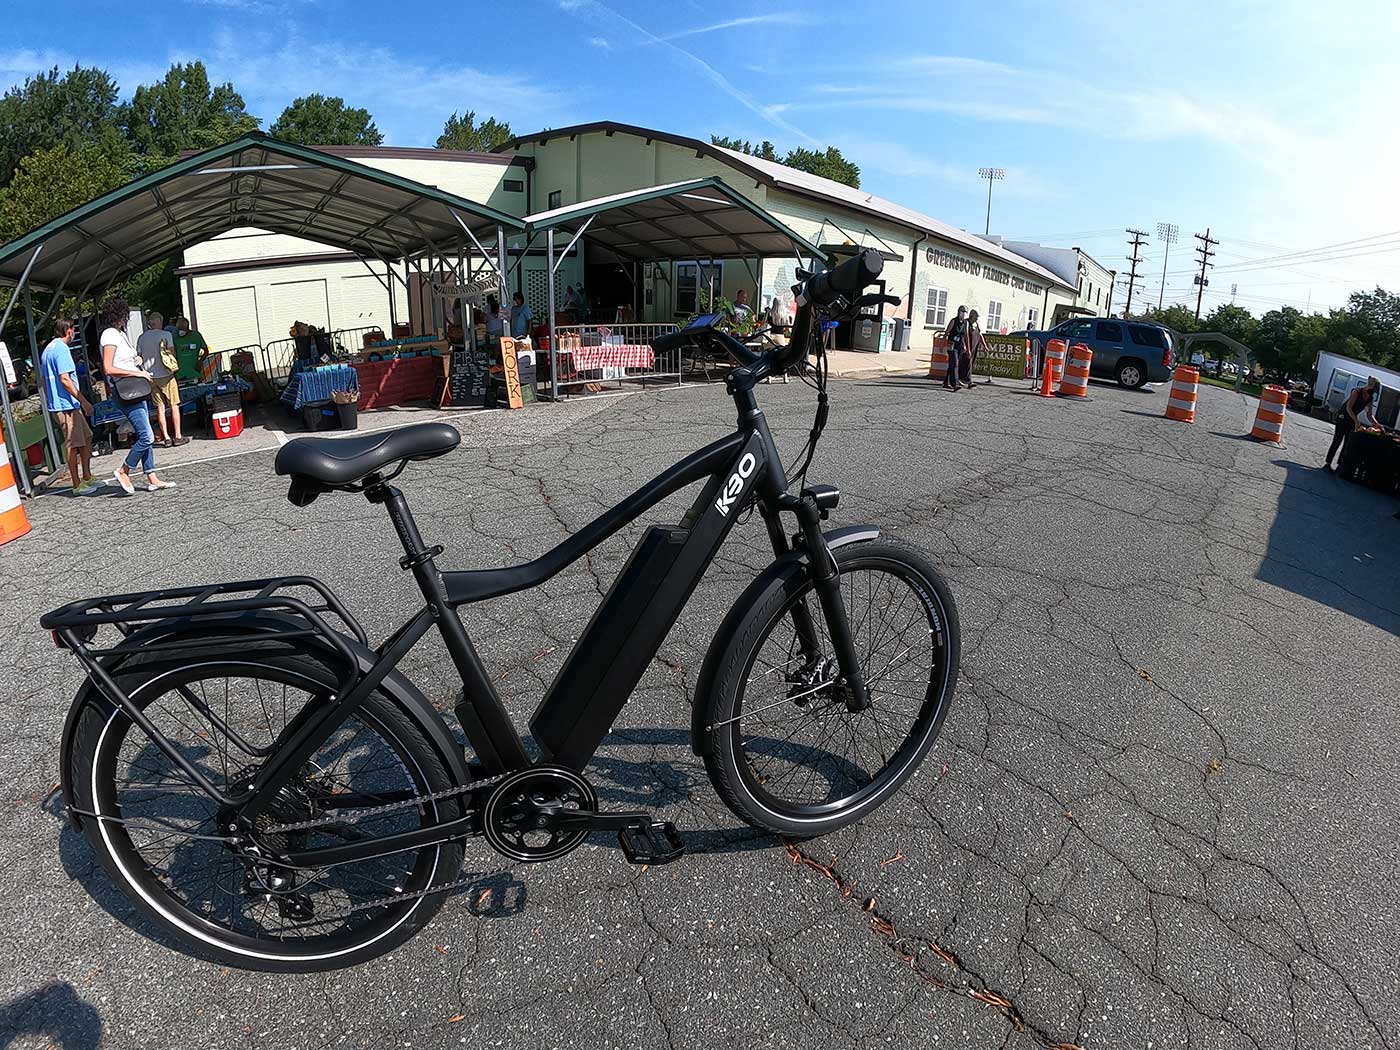 kbo breeze e-bike at the farmers market